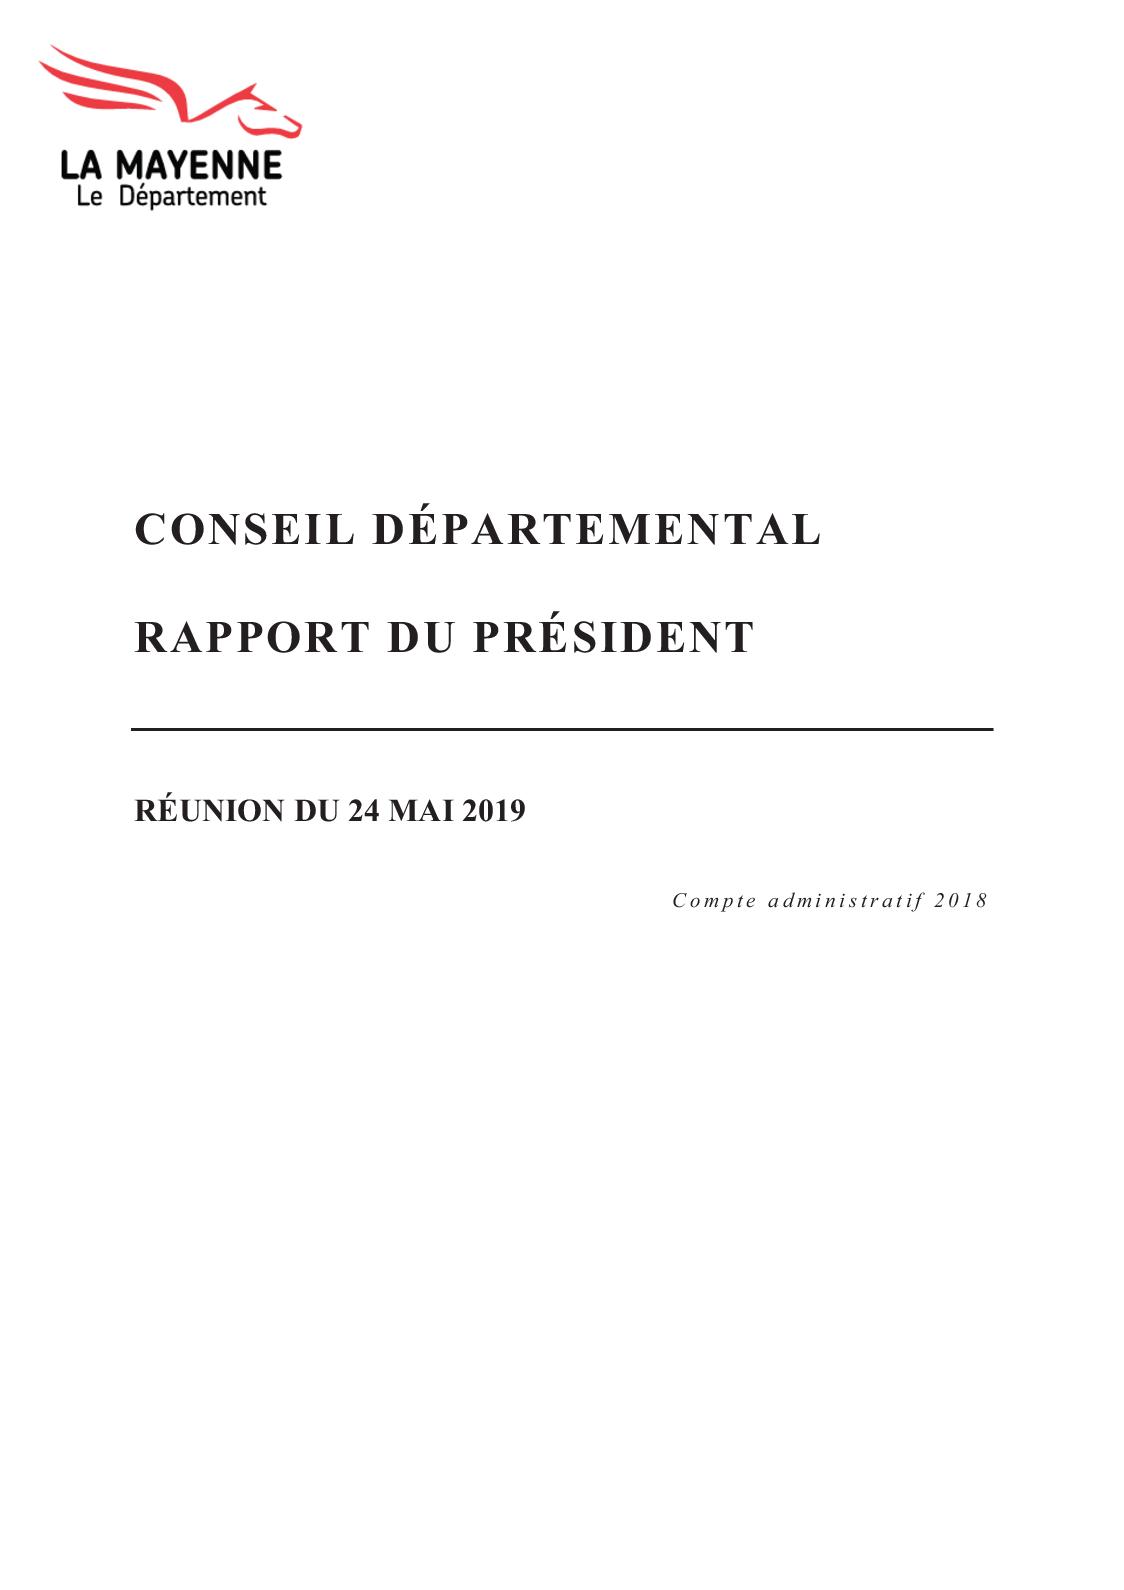 Mobilier De France Nimes Inspirant Calaméo Réunion De L assemblée Du 24 Mai 2019 – Rapports